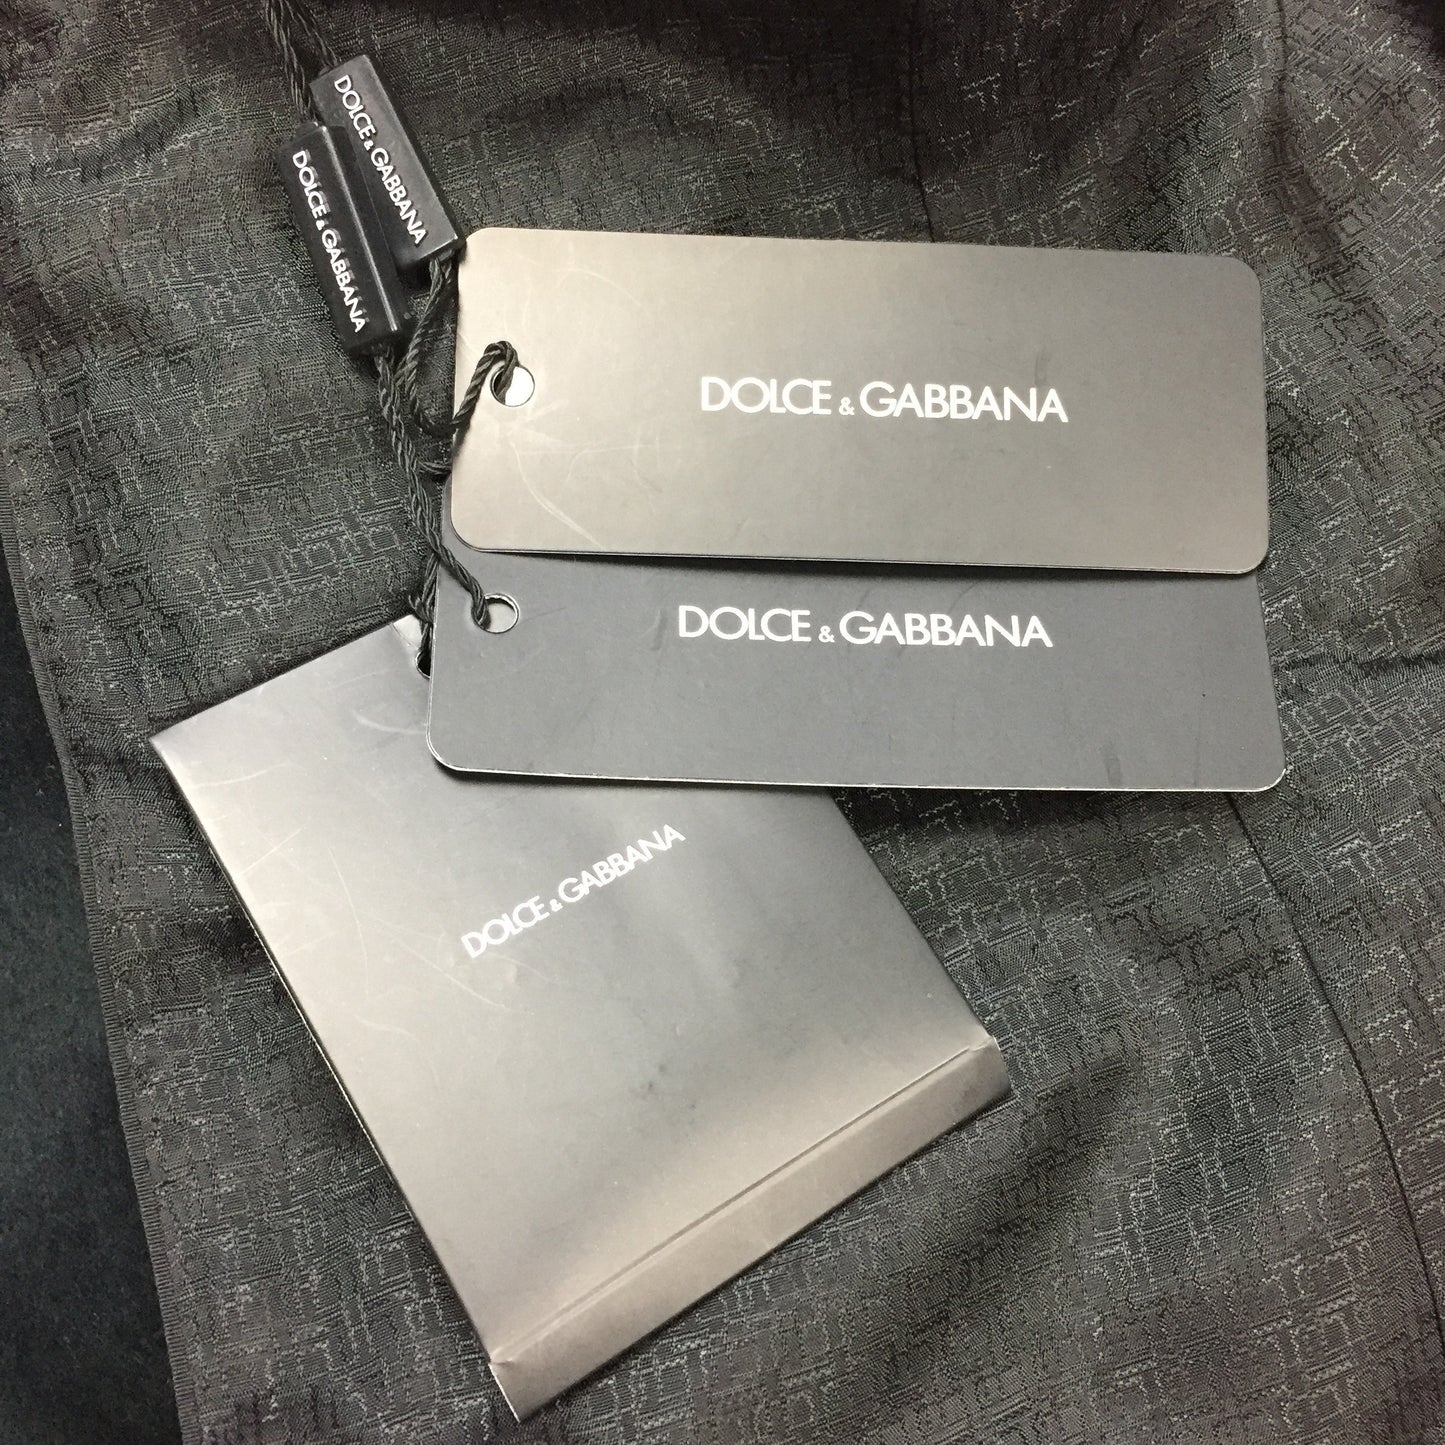 Dolce & Gabbana - Coat of Arms Velvet Blazer